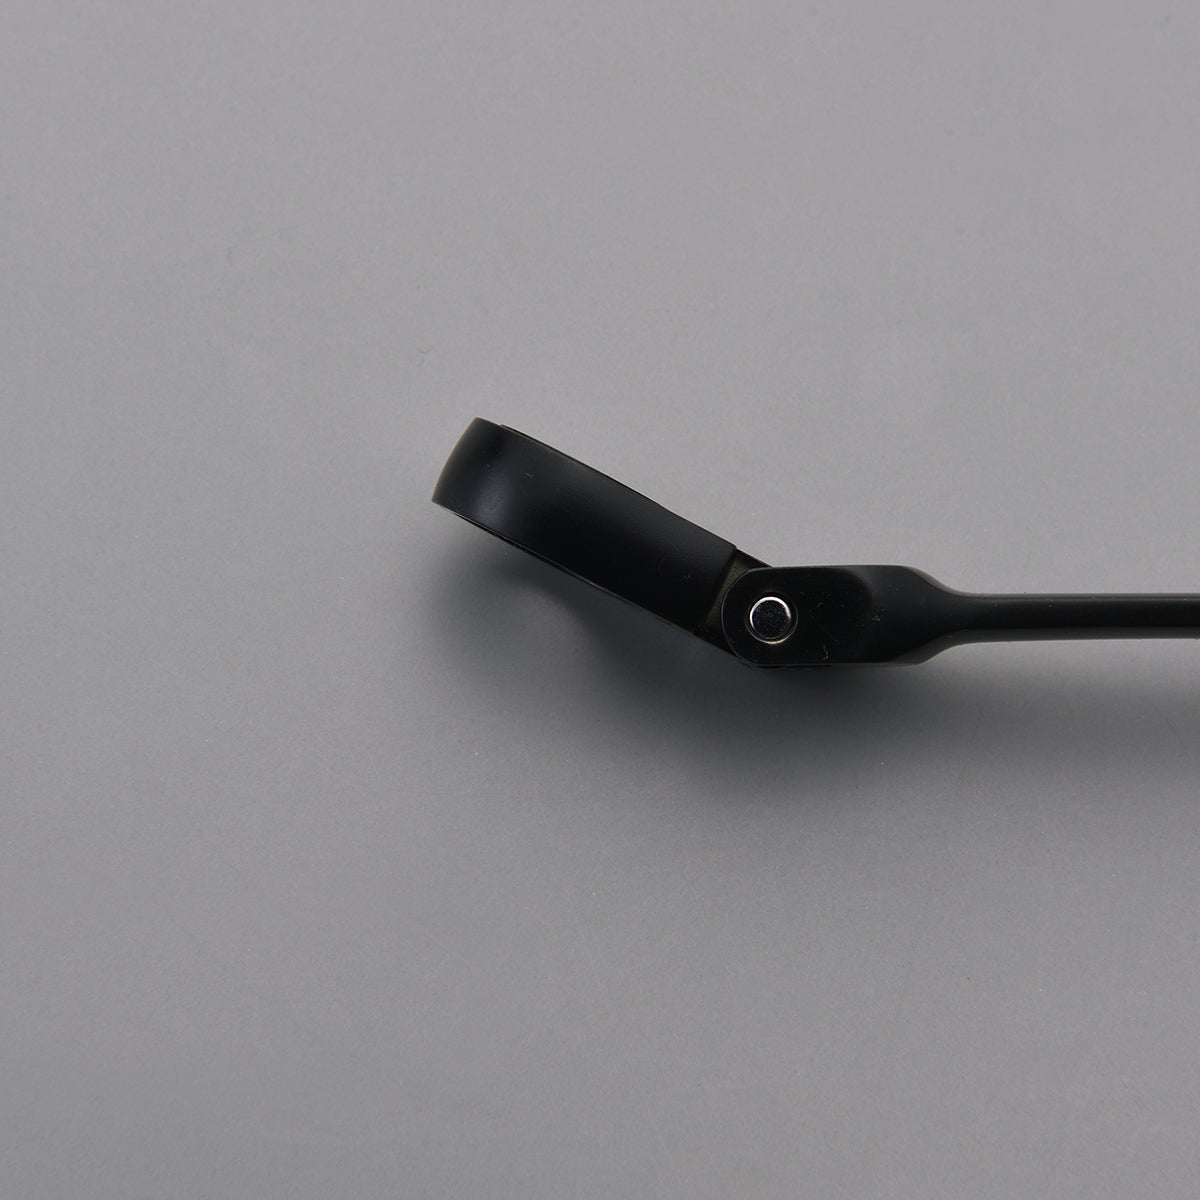 OSK 10mm Flex Ratcheting Wrench Keychain